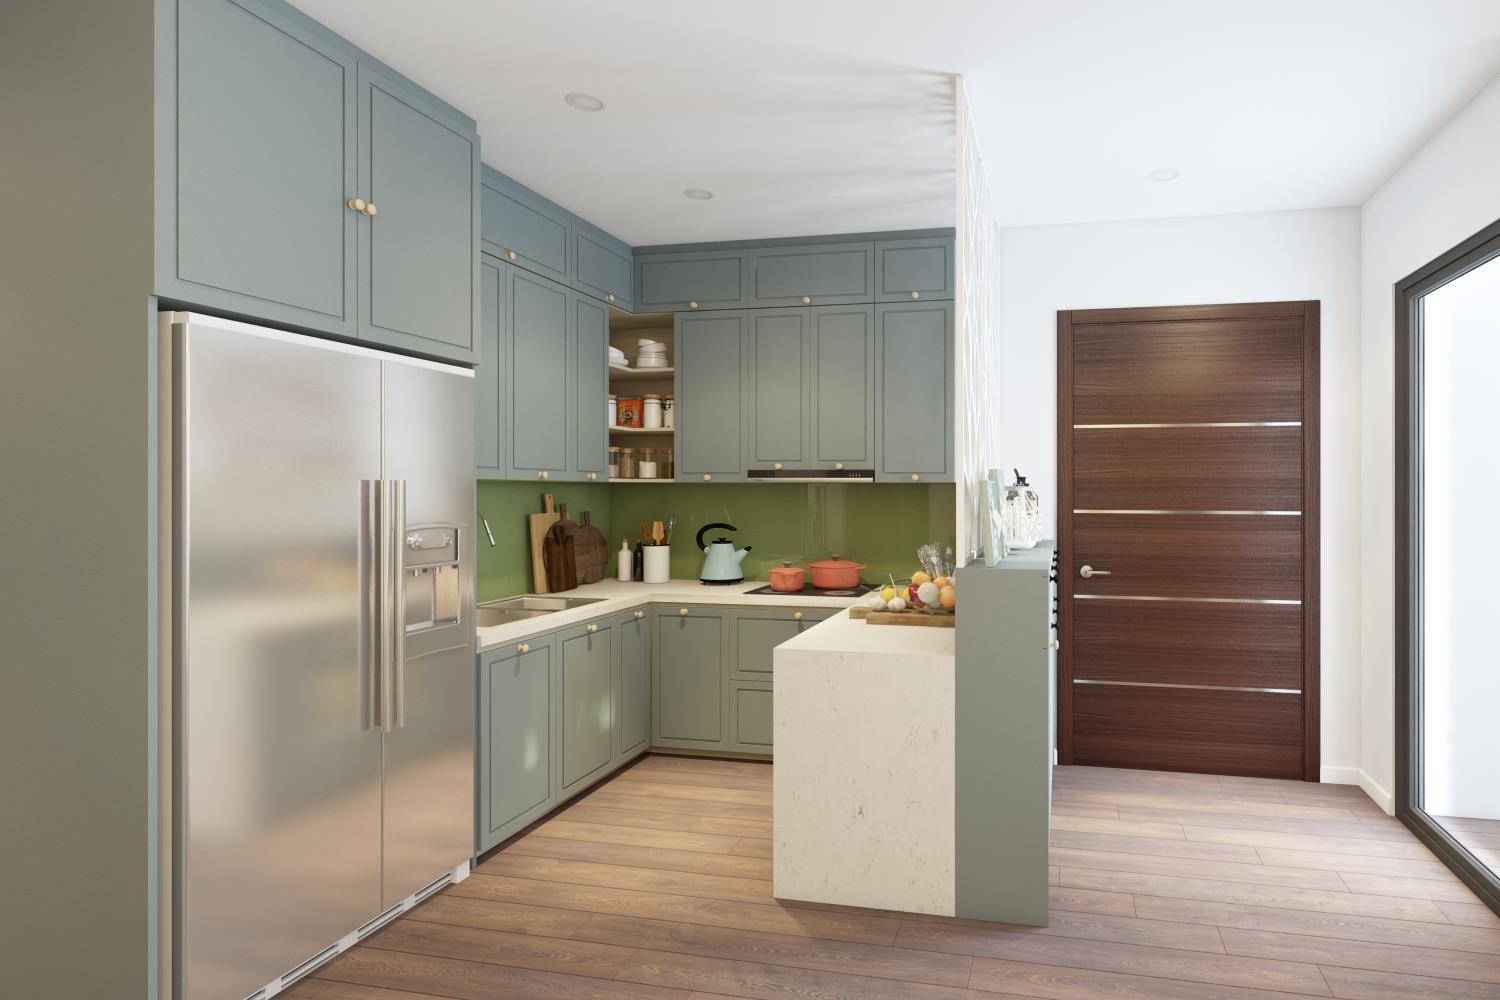 Cách thiết kế nội thất phòng bếp tiện nghi và sáng tạo cho nhà ống đẹp sẽ giúp cho không gian nấu nướng trở nên thoải mái và gọn gàng hơn. Bạn có thể sử dụng các vật liệu thiết kế phù hợp, đồng thời sáng tạo với những chi tiết độc đáo để tạo nên một phong cách ấn tượng cho phòng bếp của mình.